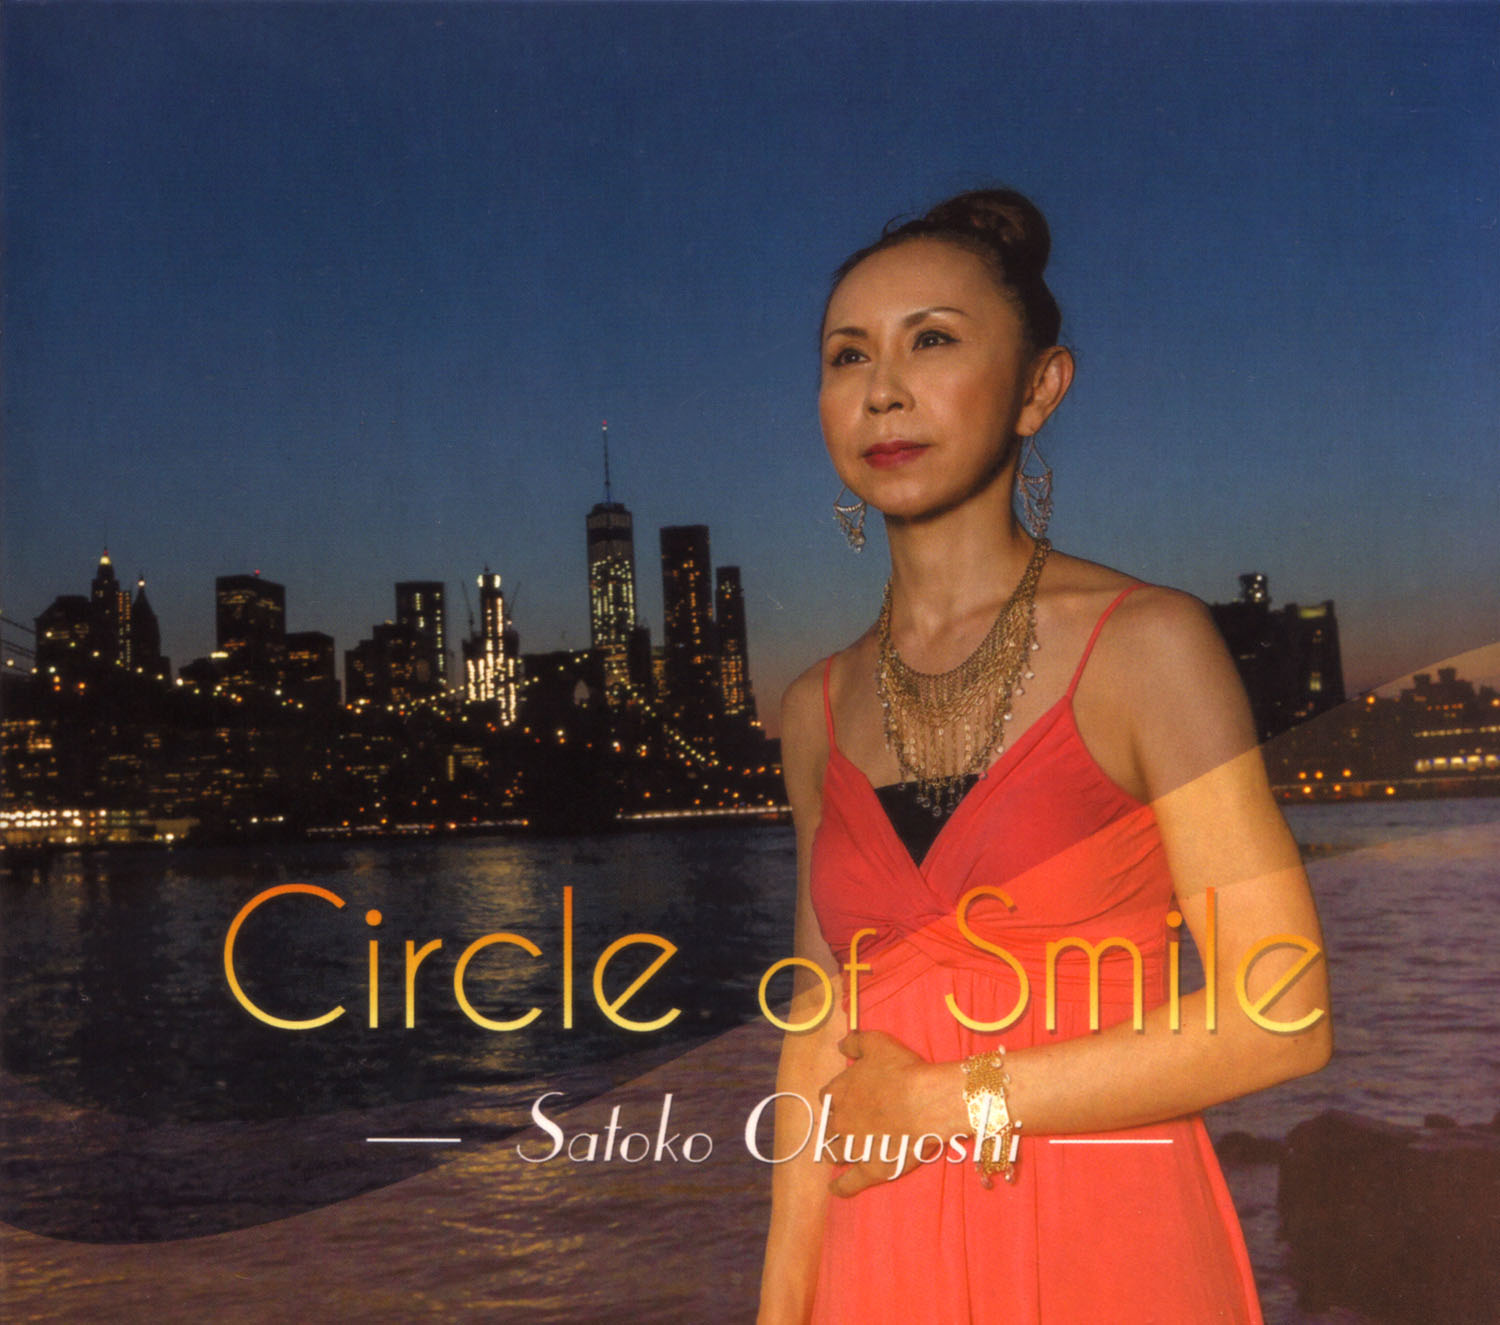 奥吉聡子2ndリーダーアルバム
『Circle of Smile』